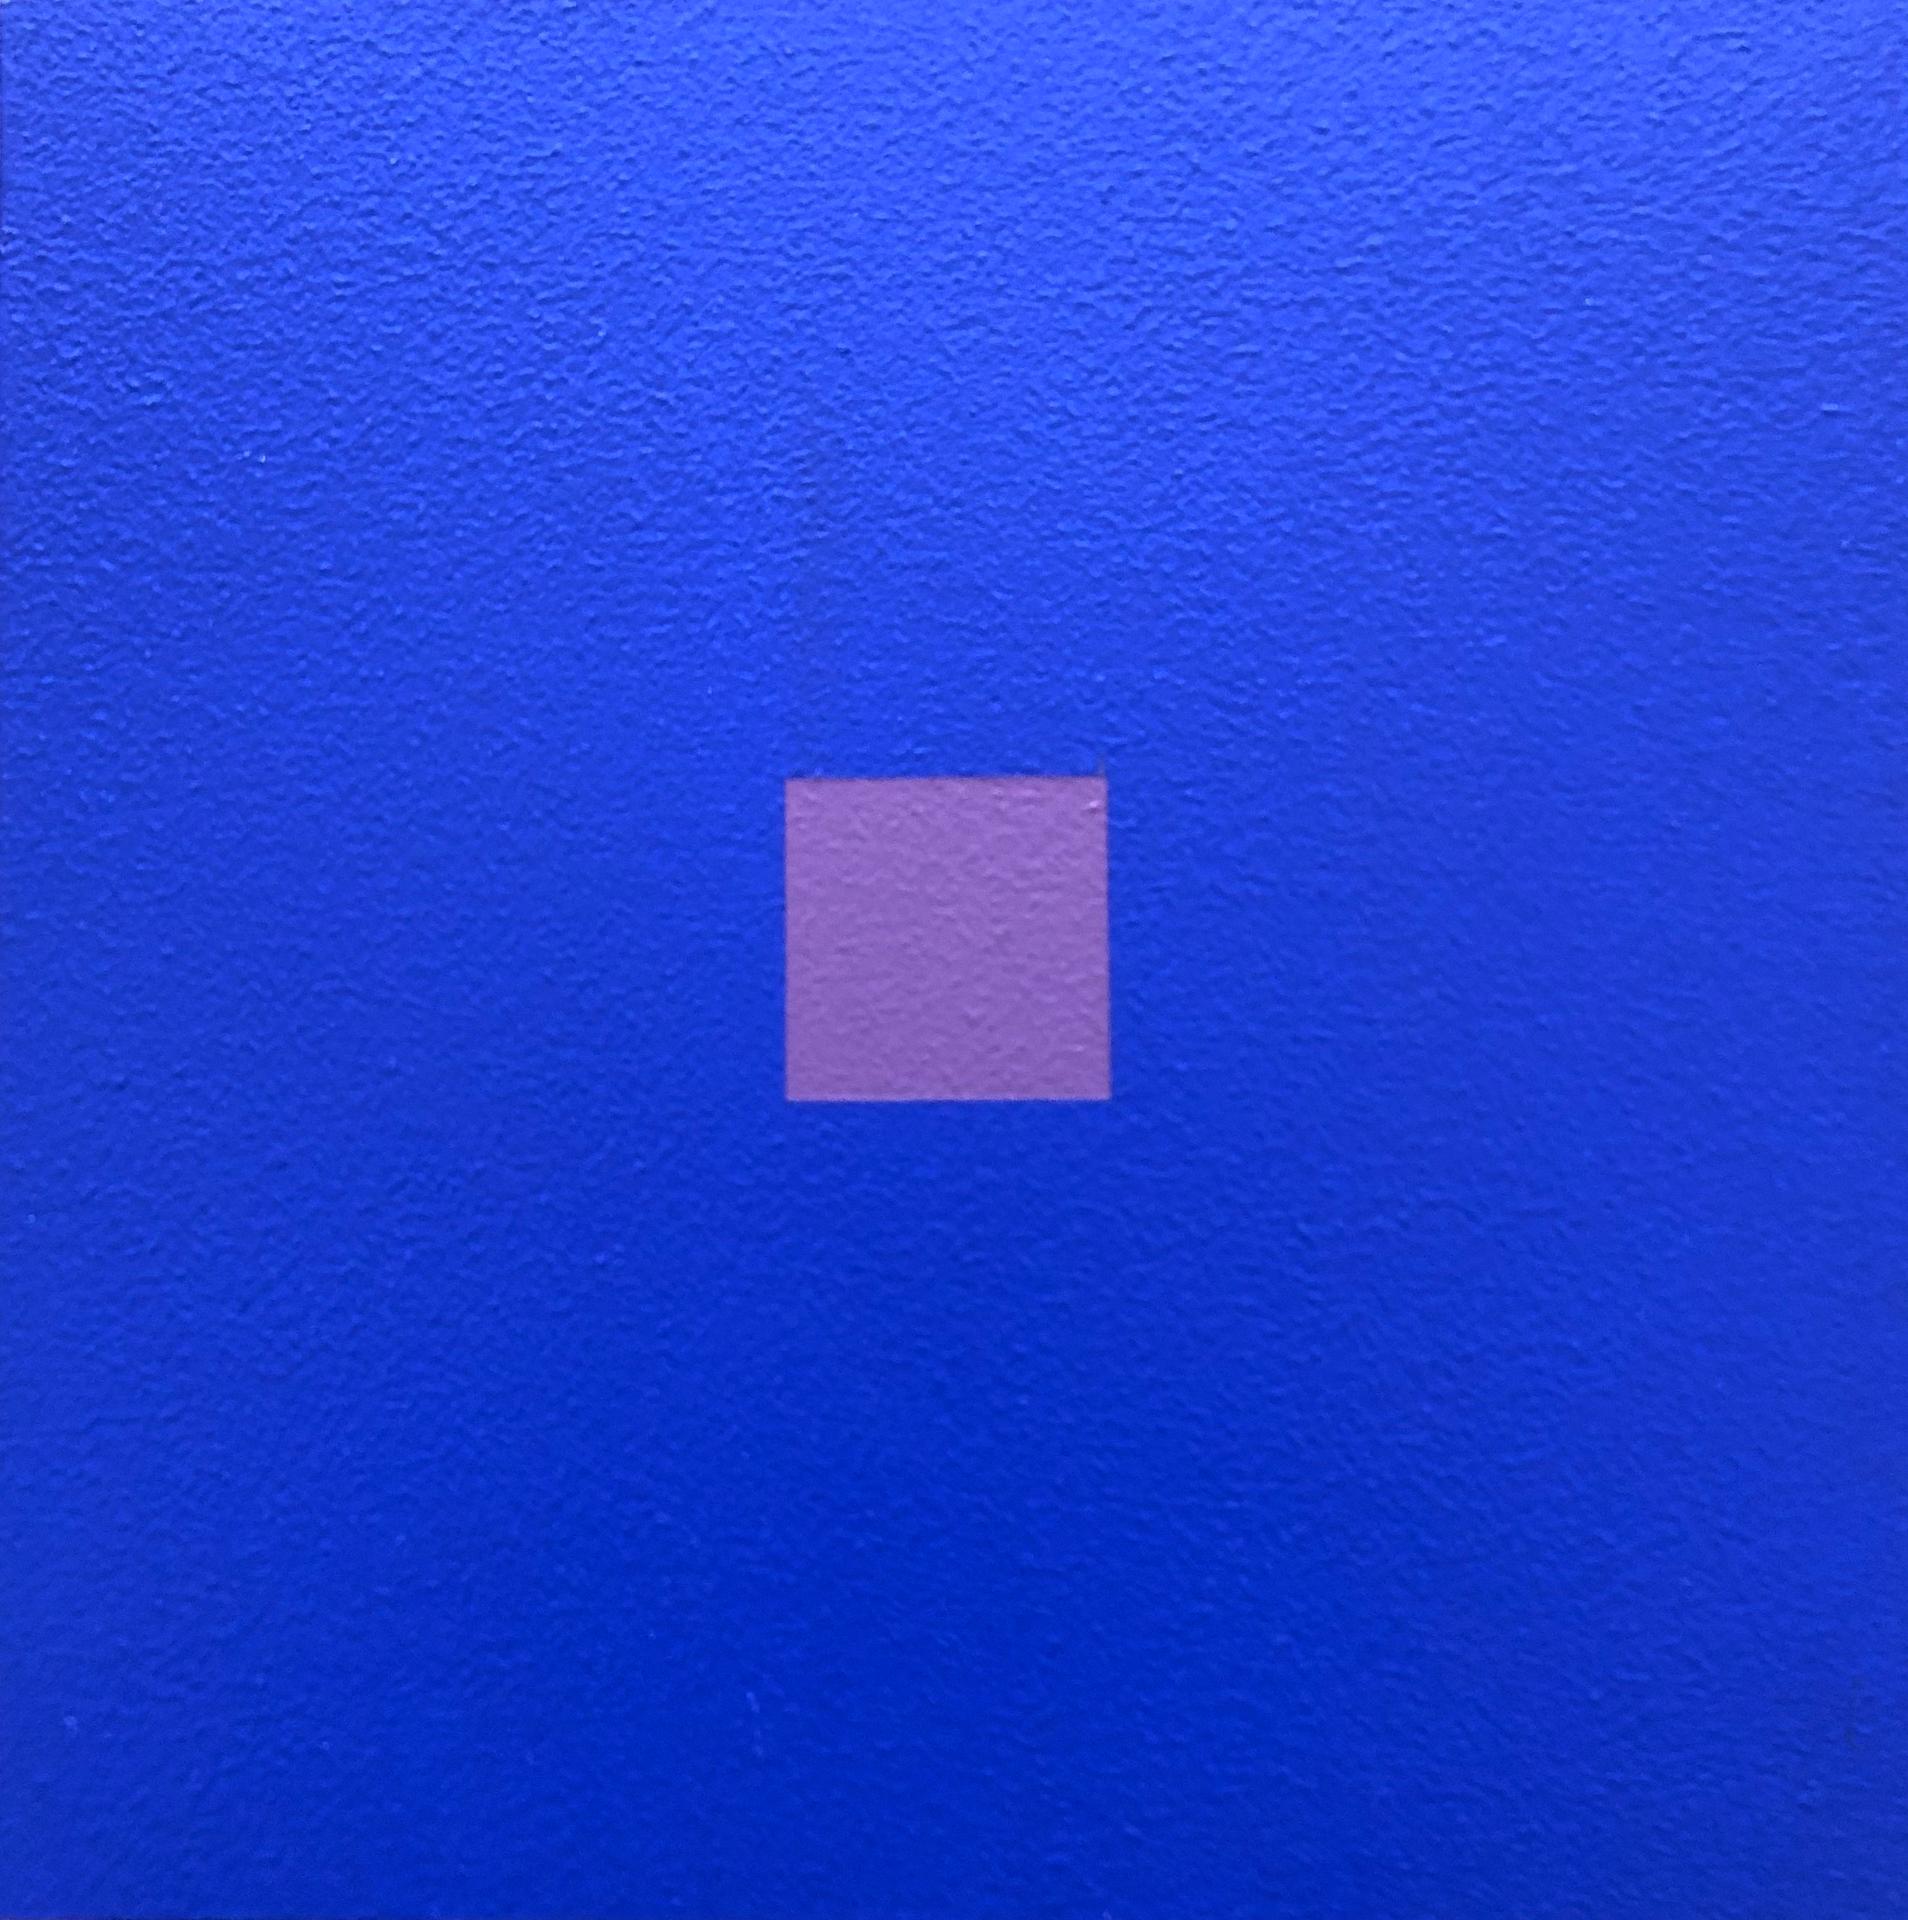 Claude Tousignant (1932) - Koan en bleu cobalt et violet-gris, 2017